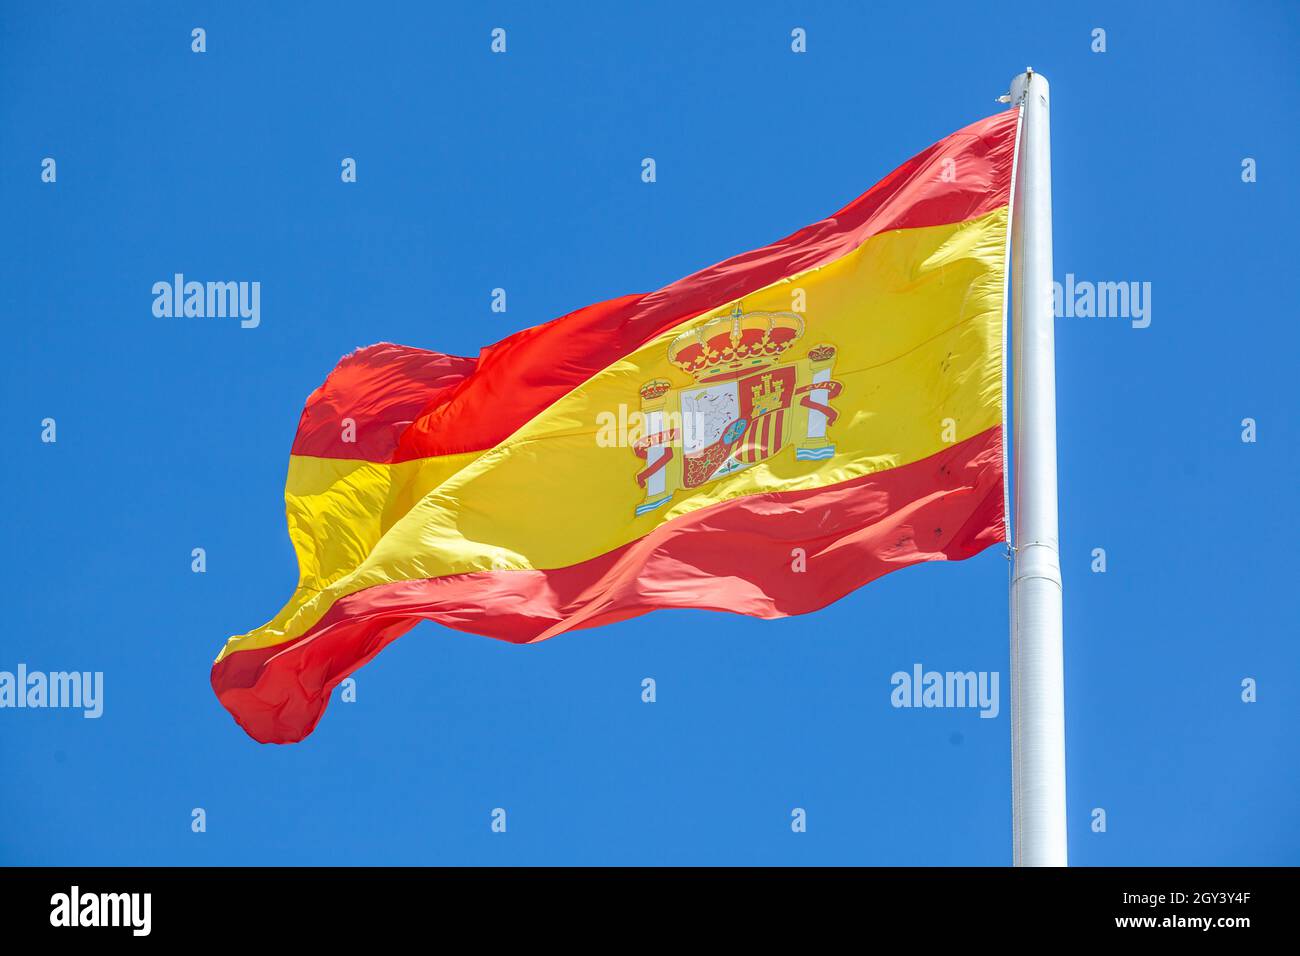 La bandiera della Spagna, come definita nella Costituzione spagnola del 1978, è composta da tre strisce orizzontali: Rossa, gialla e rossa, la striscia gialla Foto Stock